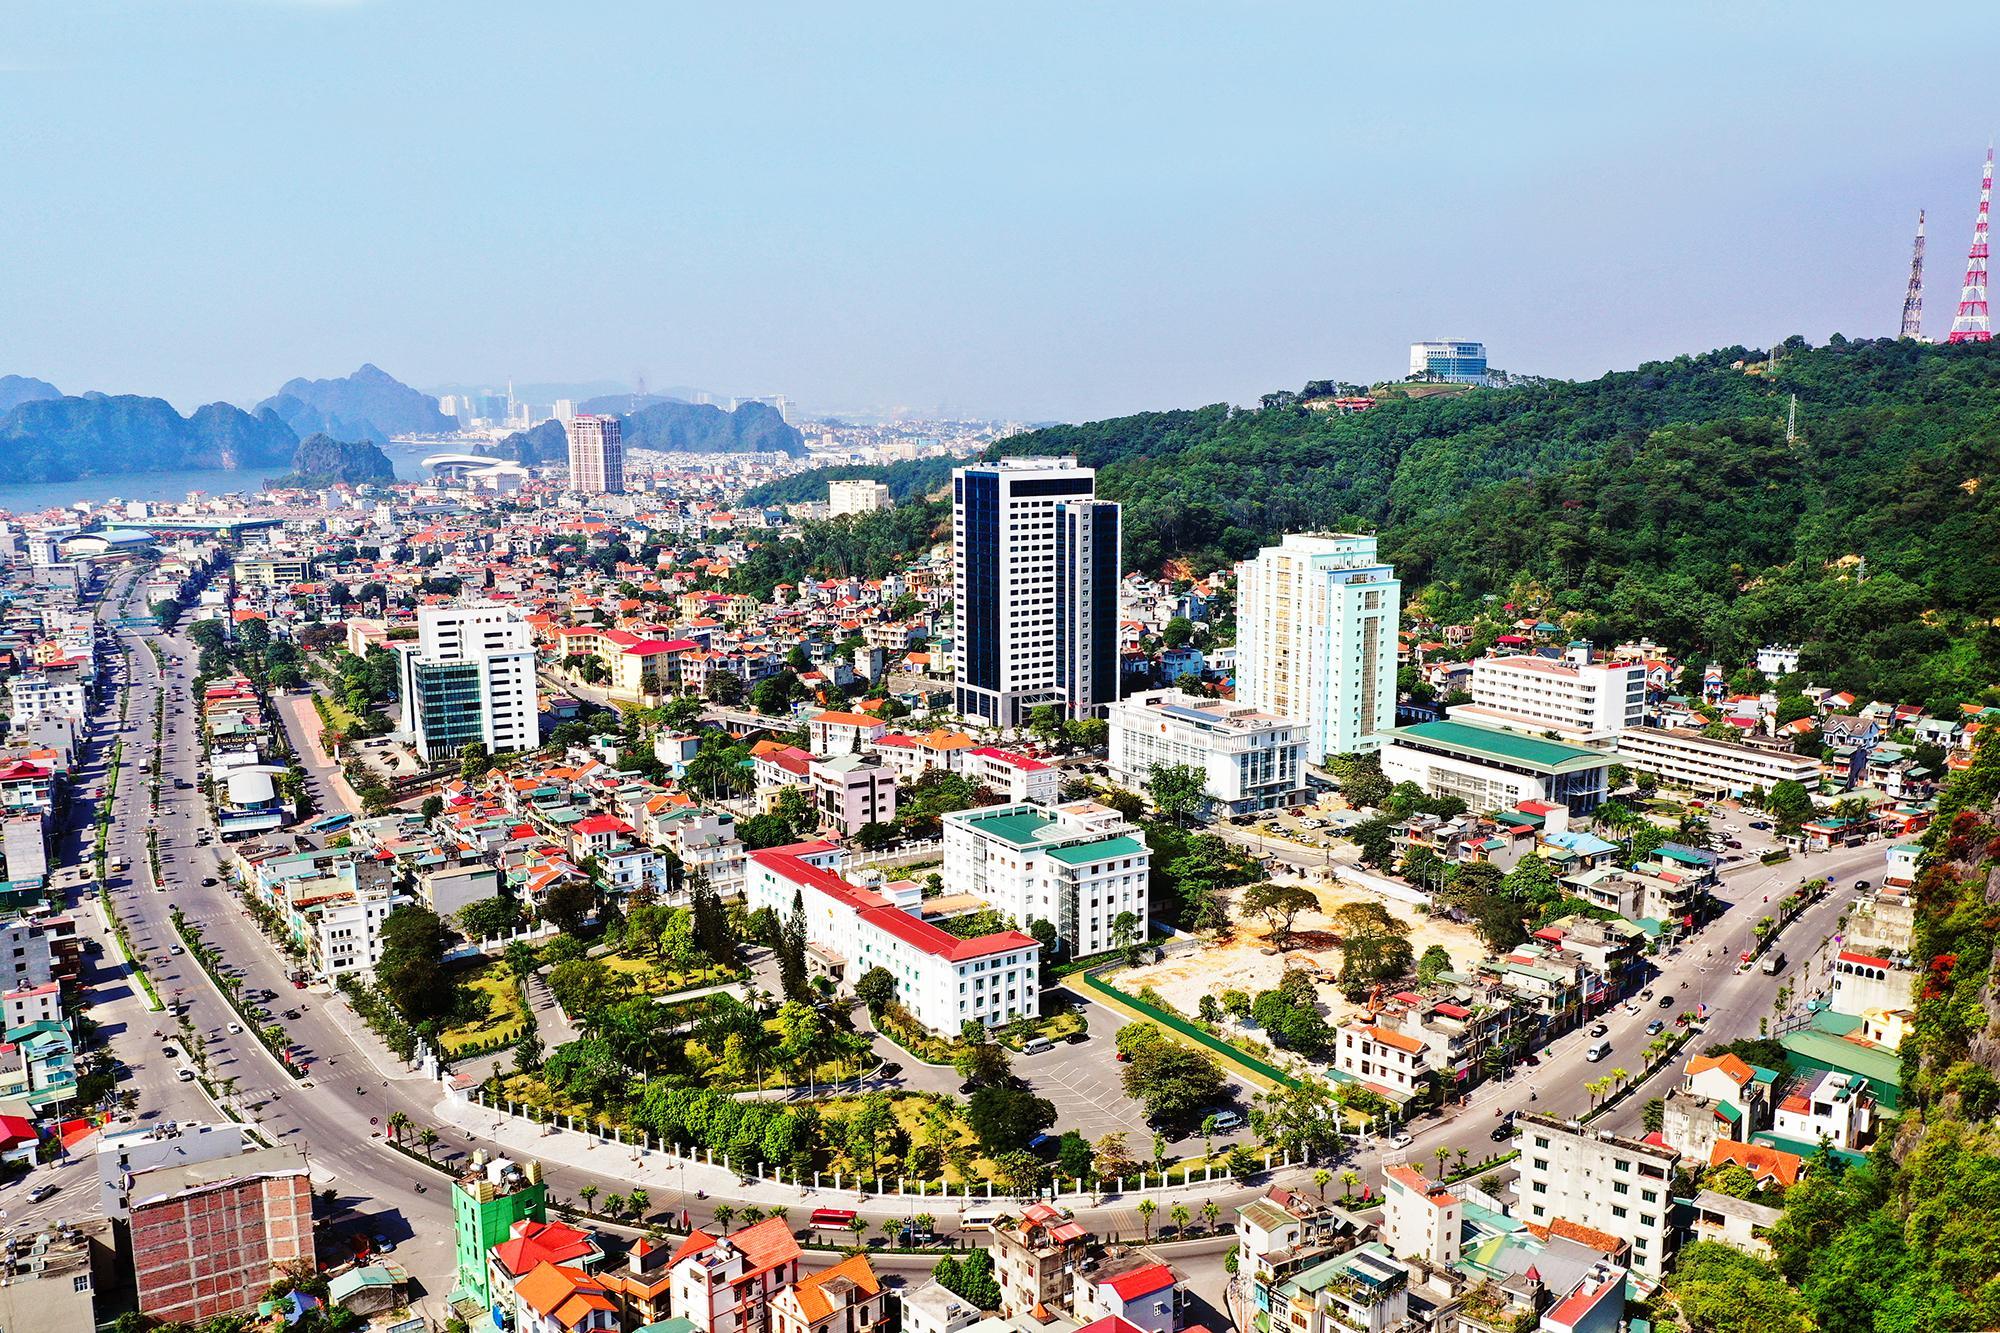 Là thủ phủ của tỉnh, TP Hạ Long đã trở thành một đô thị hiện đại, văn minh và ngày càng phát triển. Ảnh: Hùng Sơn